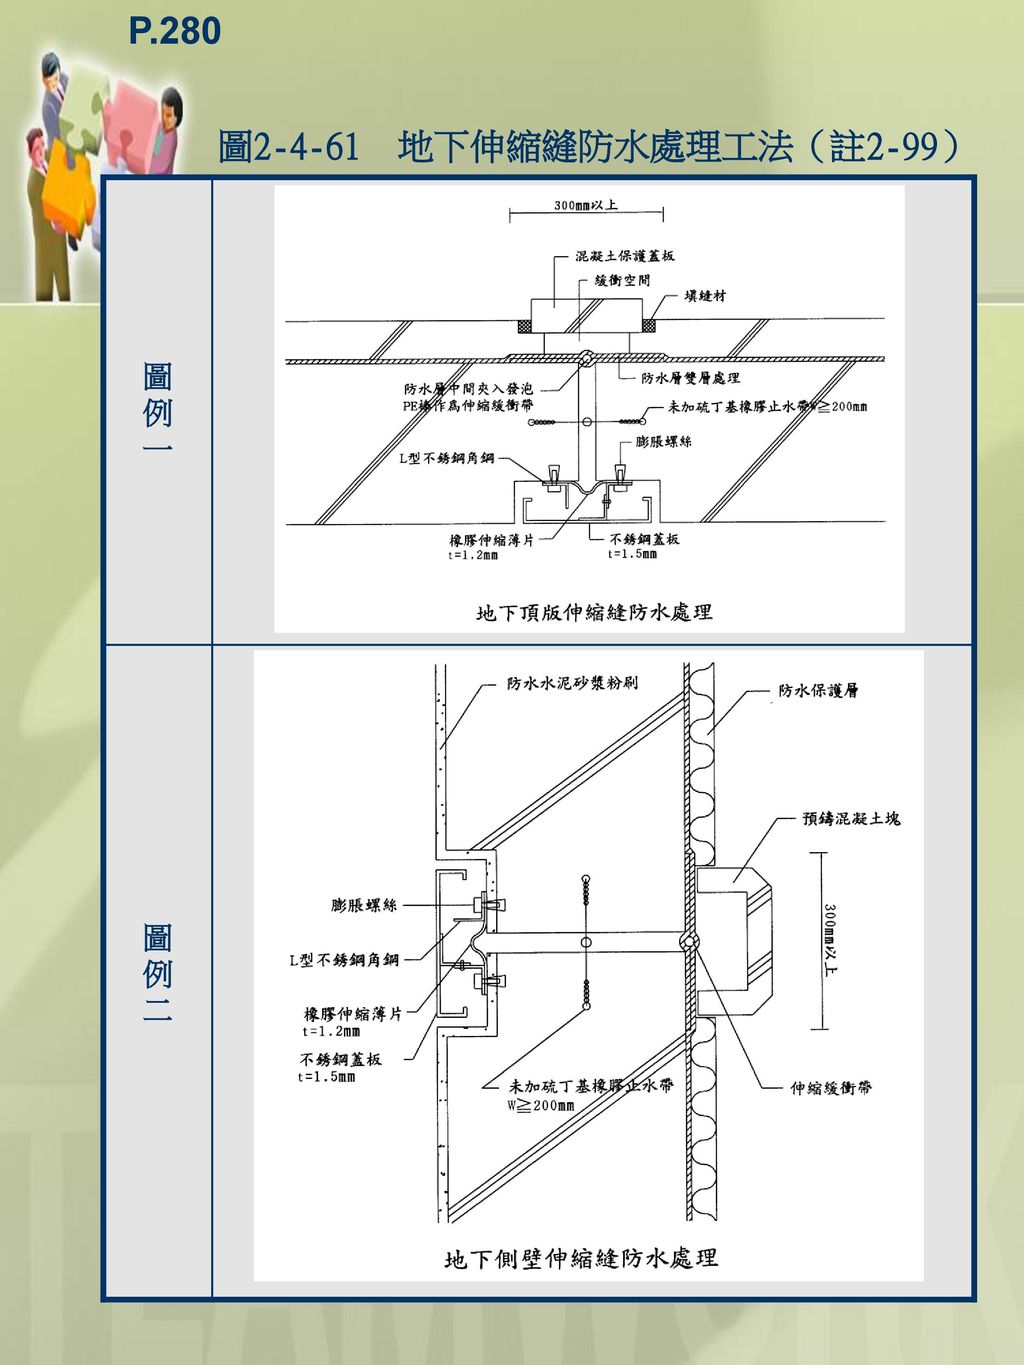 P.280 圖 地下伸縮縫防水處理工法（註2-99） 圖 例 一 二